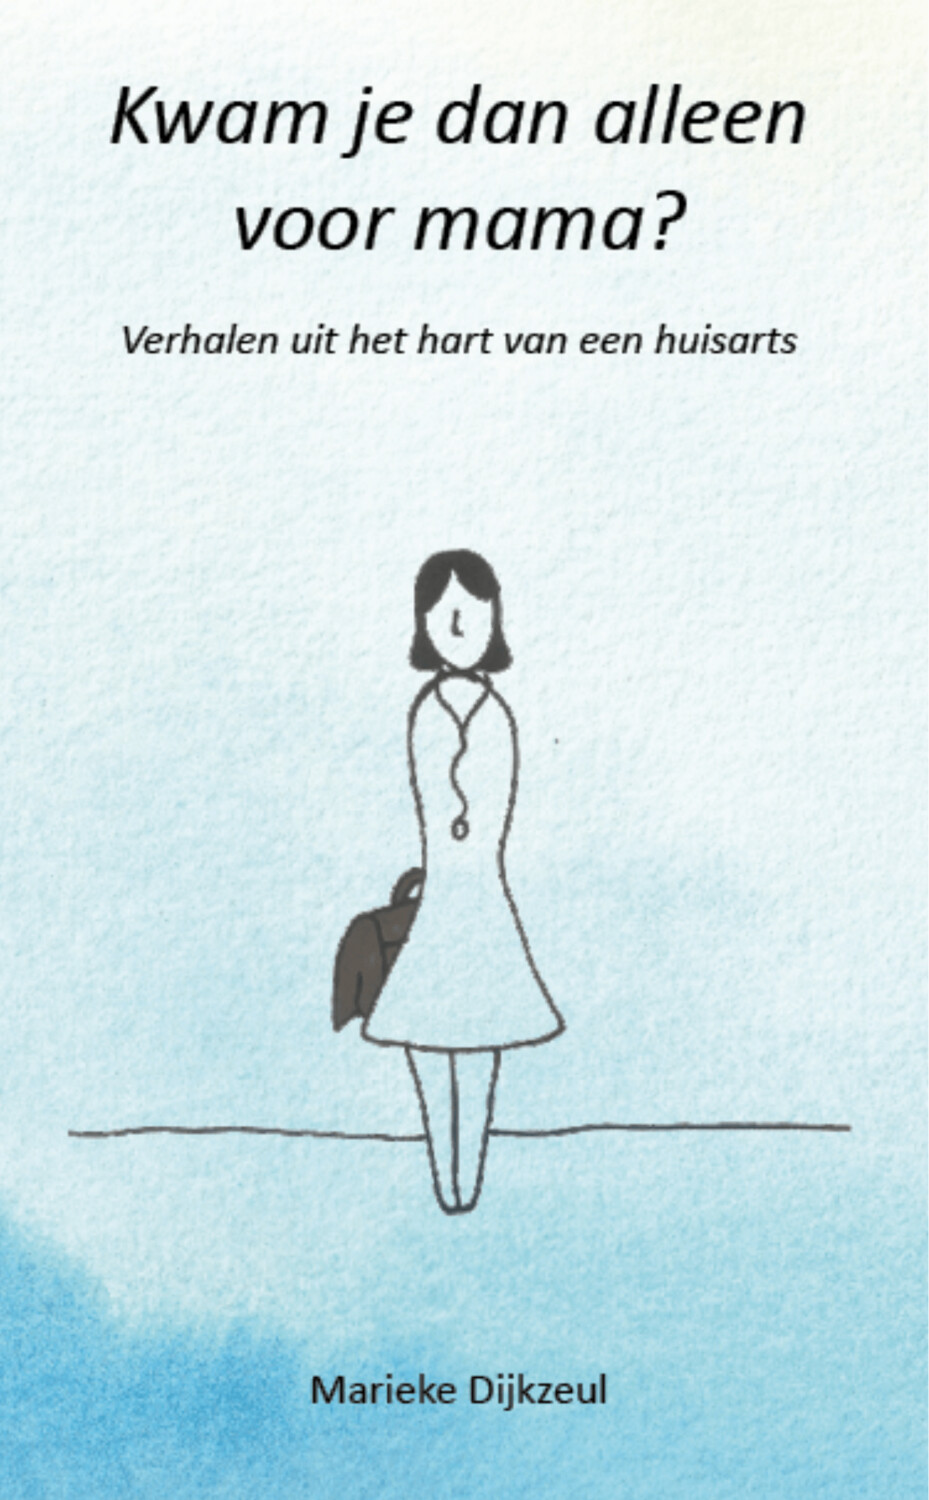  Marieke Dijkzeul Boekpresentatie 'Verhalen uit het hart van een huisarts' in Broekhuis Apeldoorn